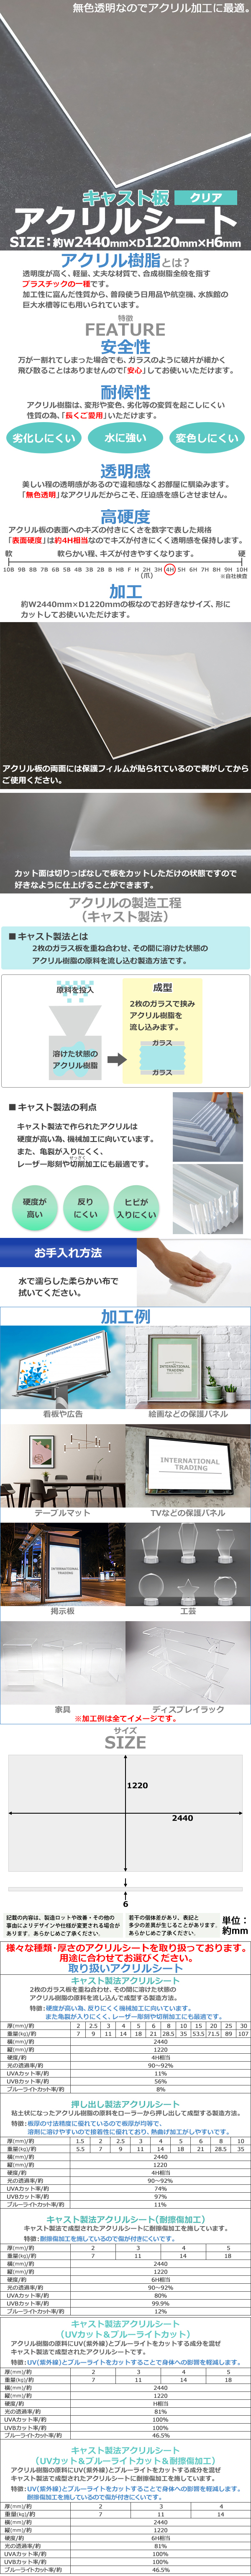 日本公式アクリルシート アクリル板 キャスト板 約横2440mm×縦1220mm×厚6mm 無色透明 原板 アクリルボード キャスト製法 ボード クリア 樹脂、プラスチック